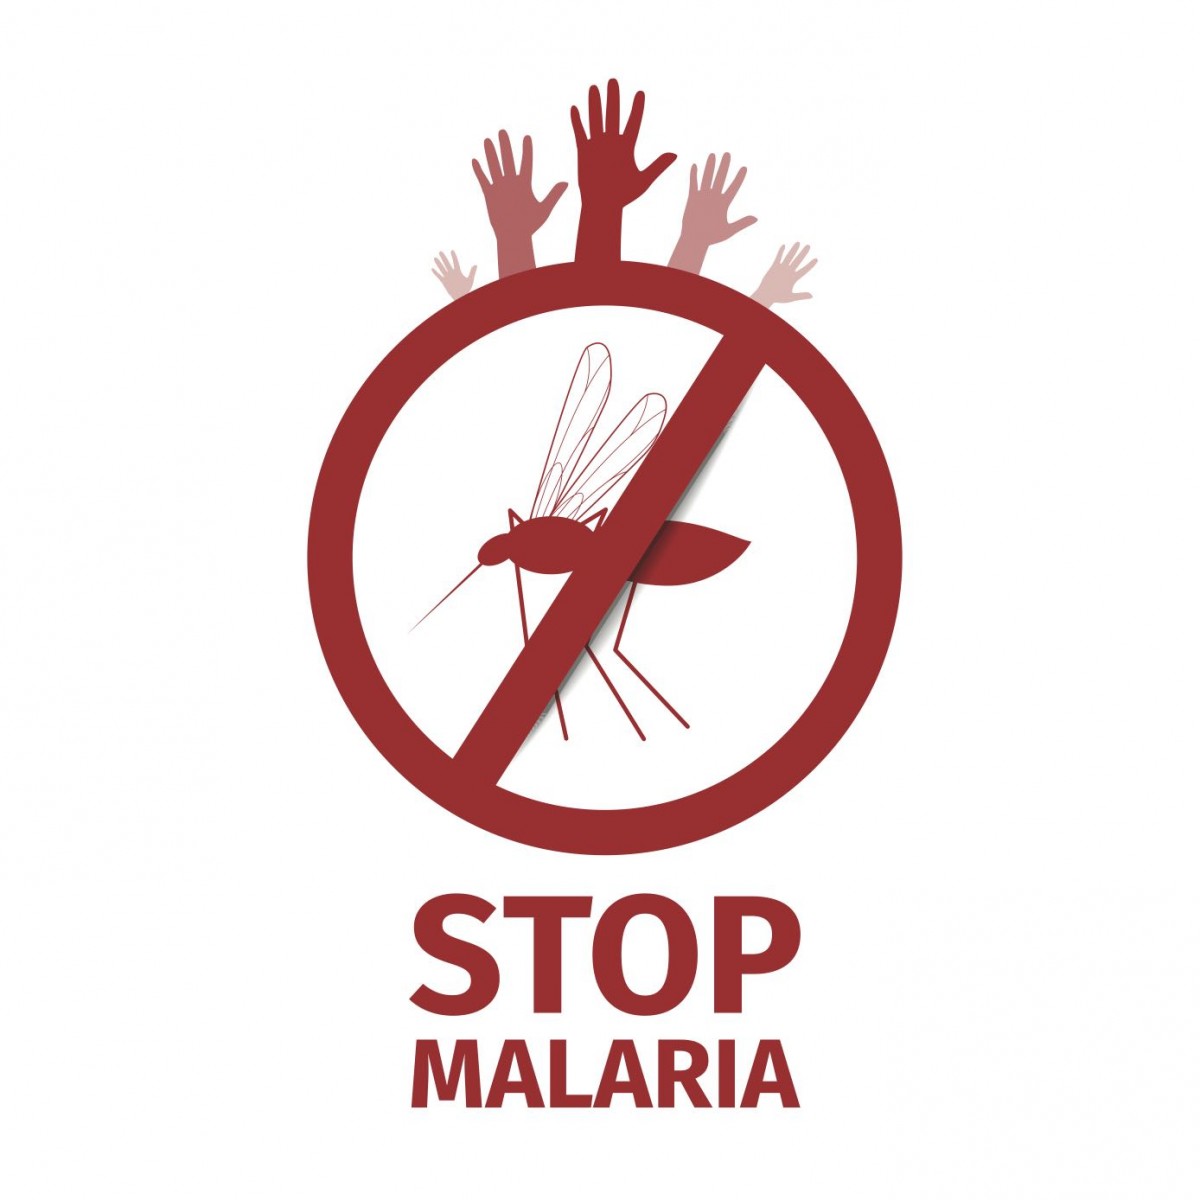 Malaria: Symptoms, Prevention and Treatment